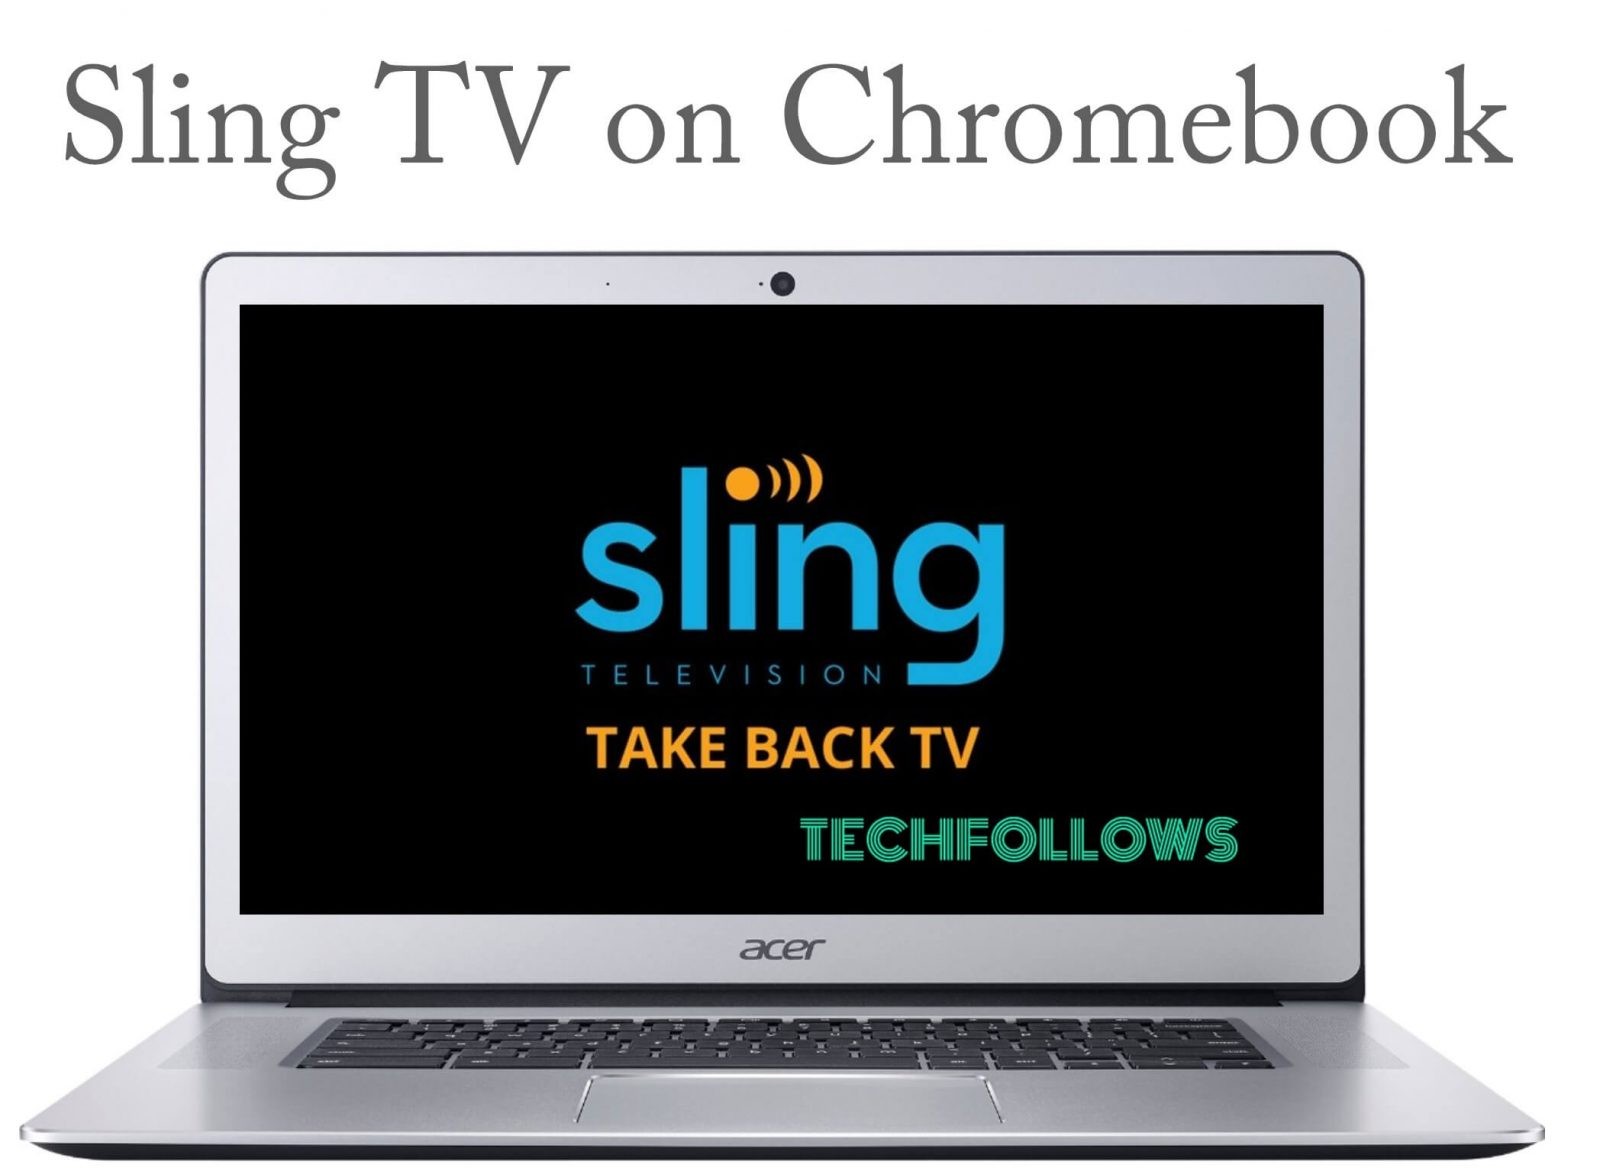 Sling TV on Chromebook